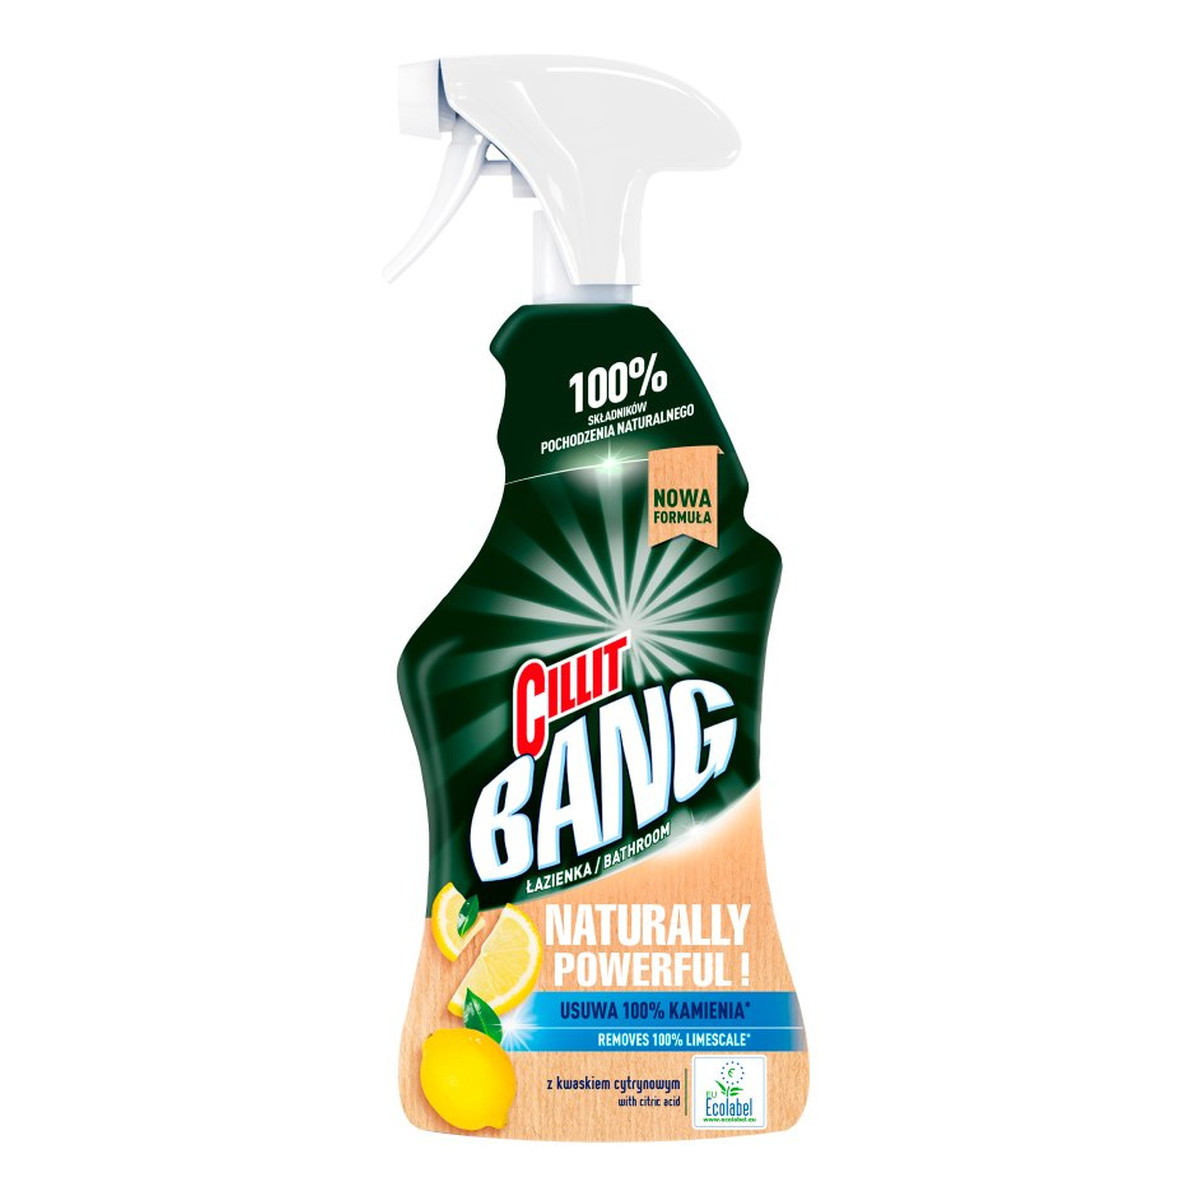 Cillit Bang Naturally Powerful Spray czyszczący do łazienki z kwaskiem cytrynowym 750ml